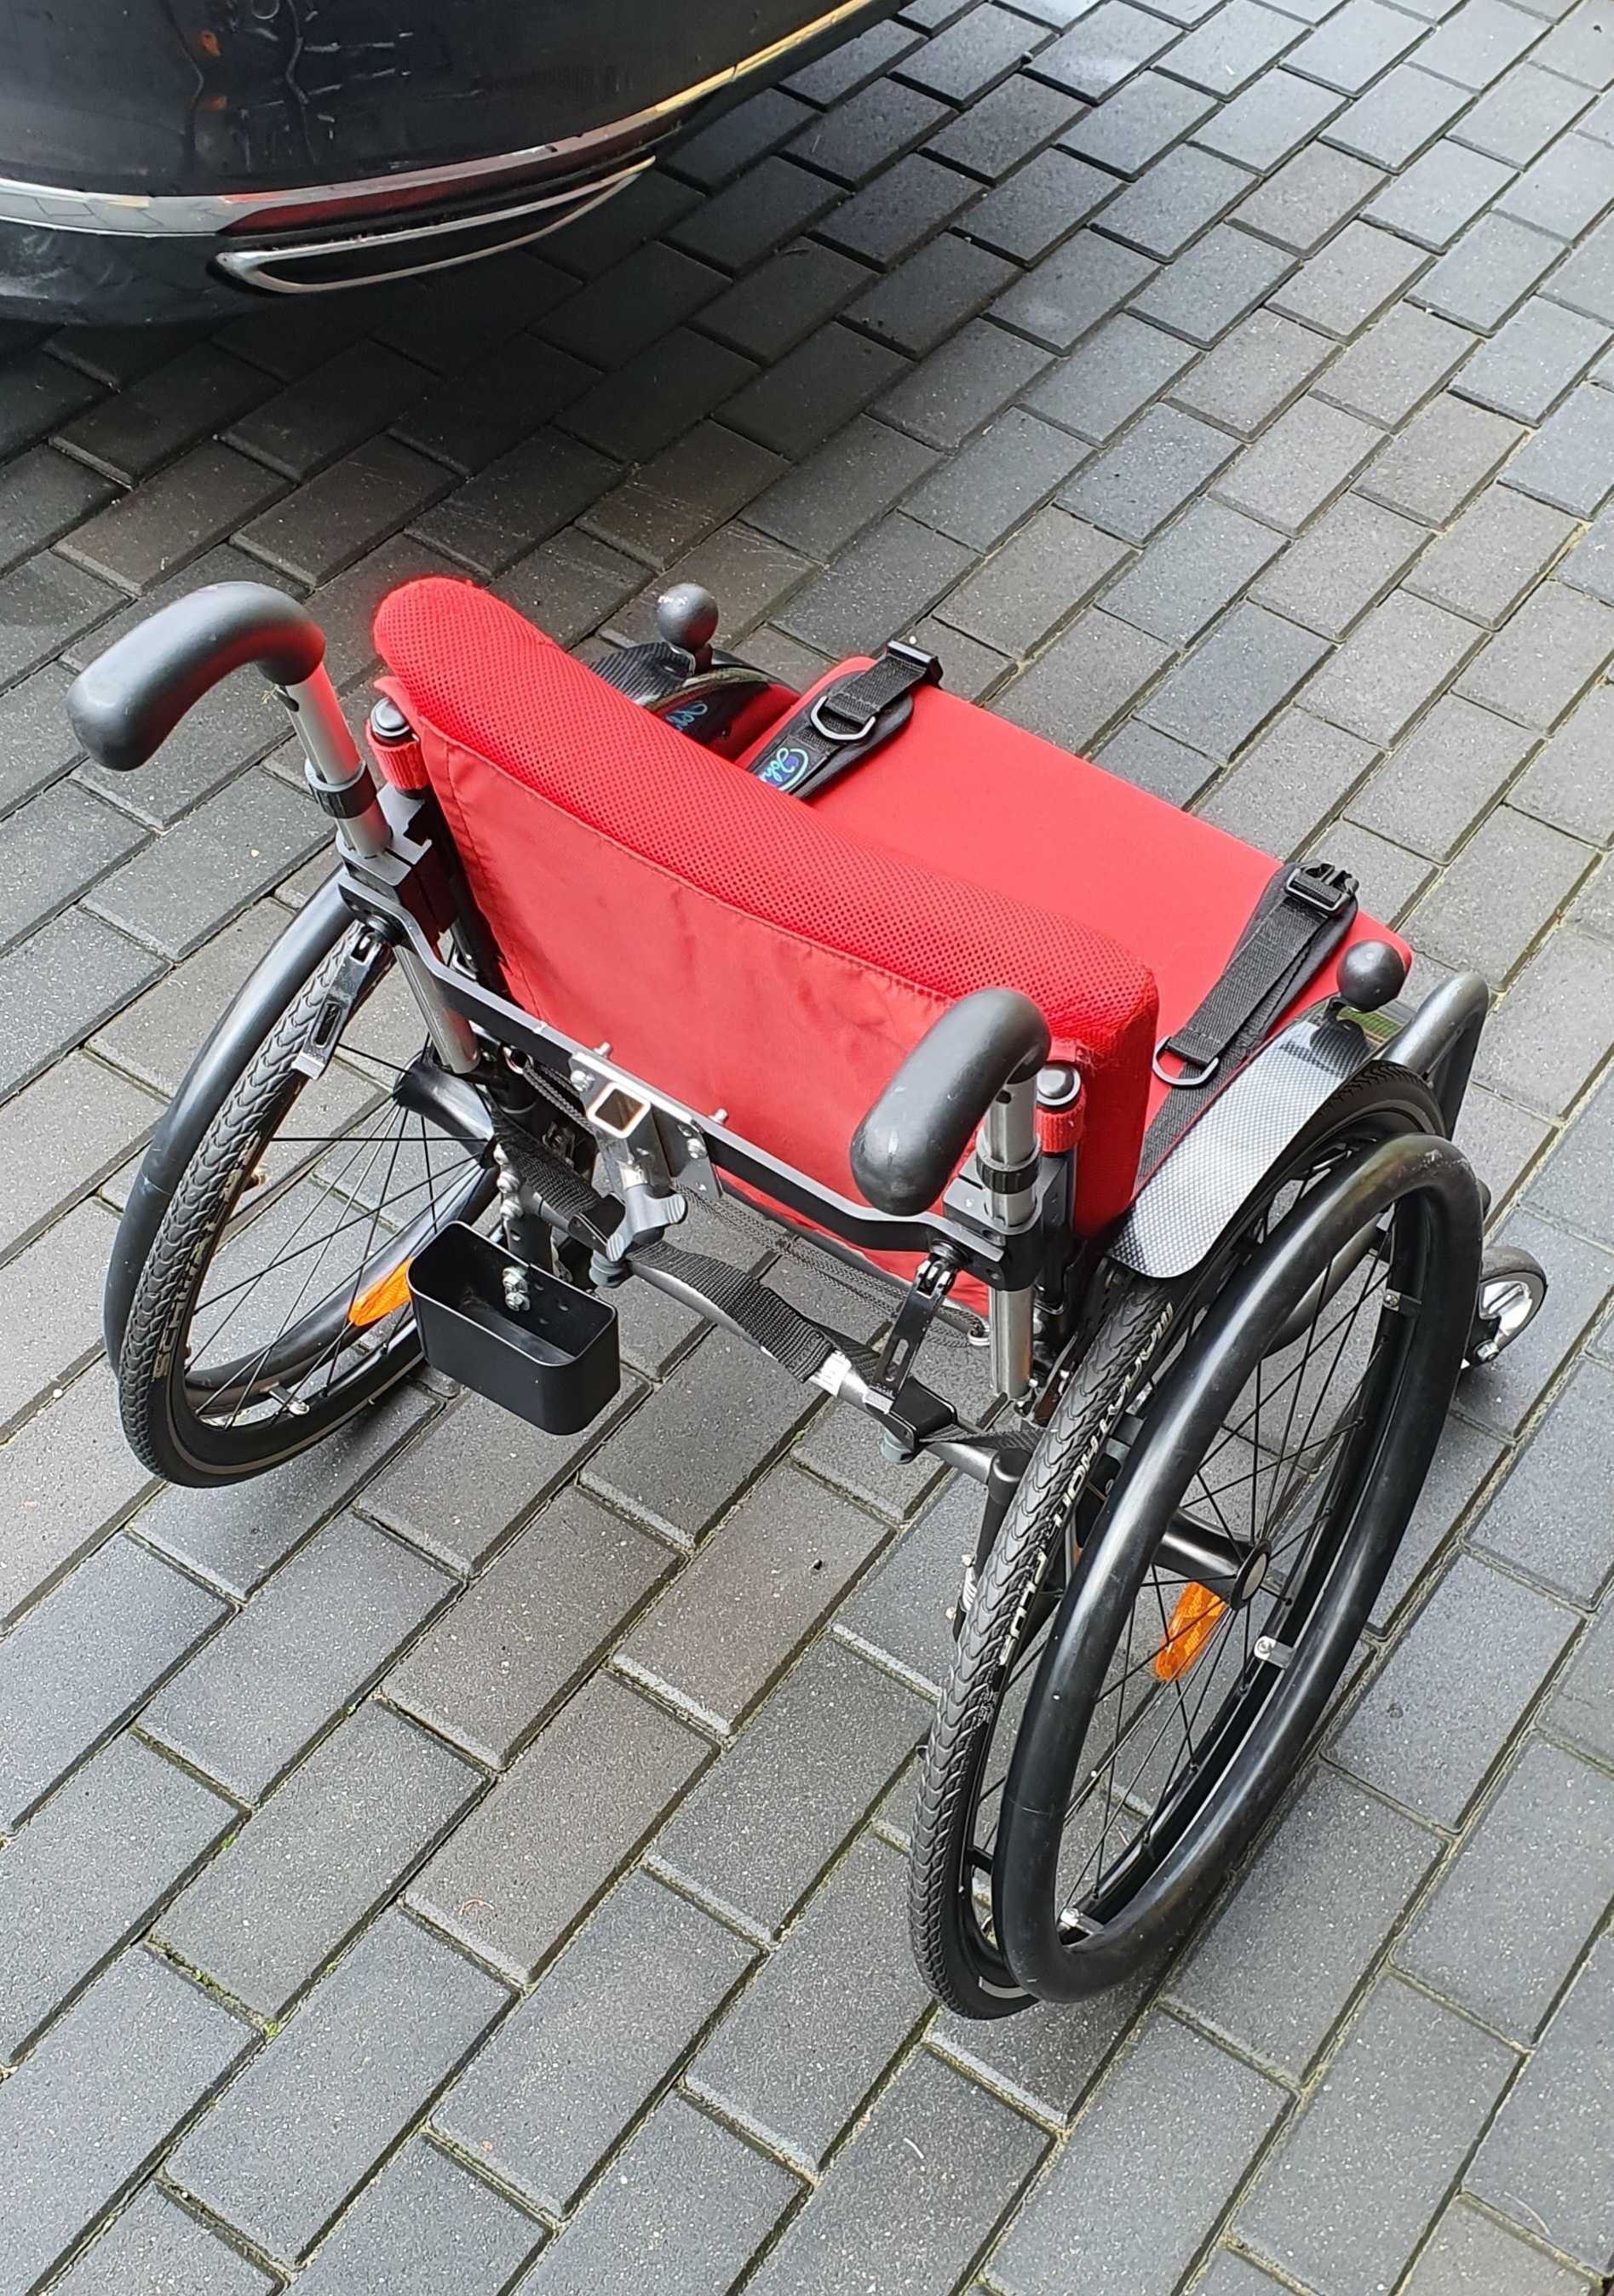 Wózek aktywny dziecko młodzież SORG Vector inwalidzki aluminiowy lekki